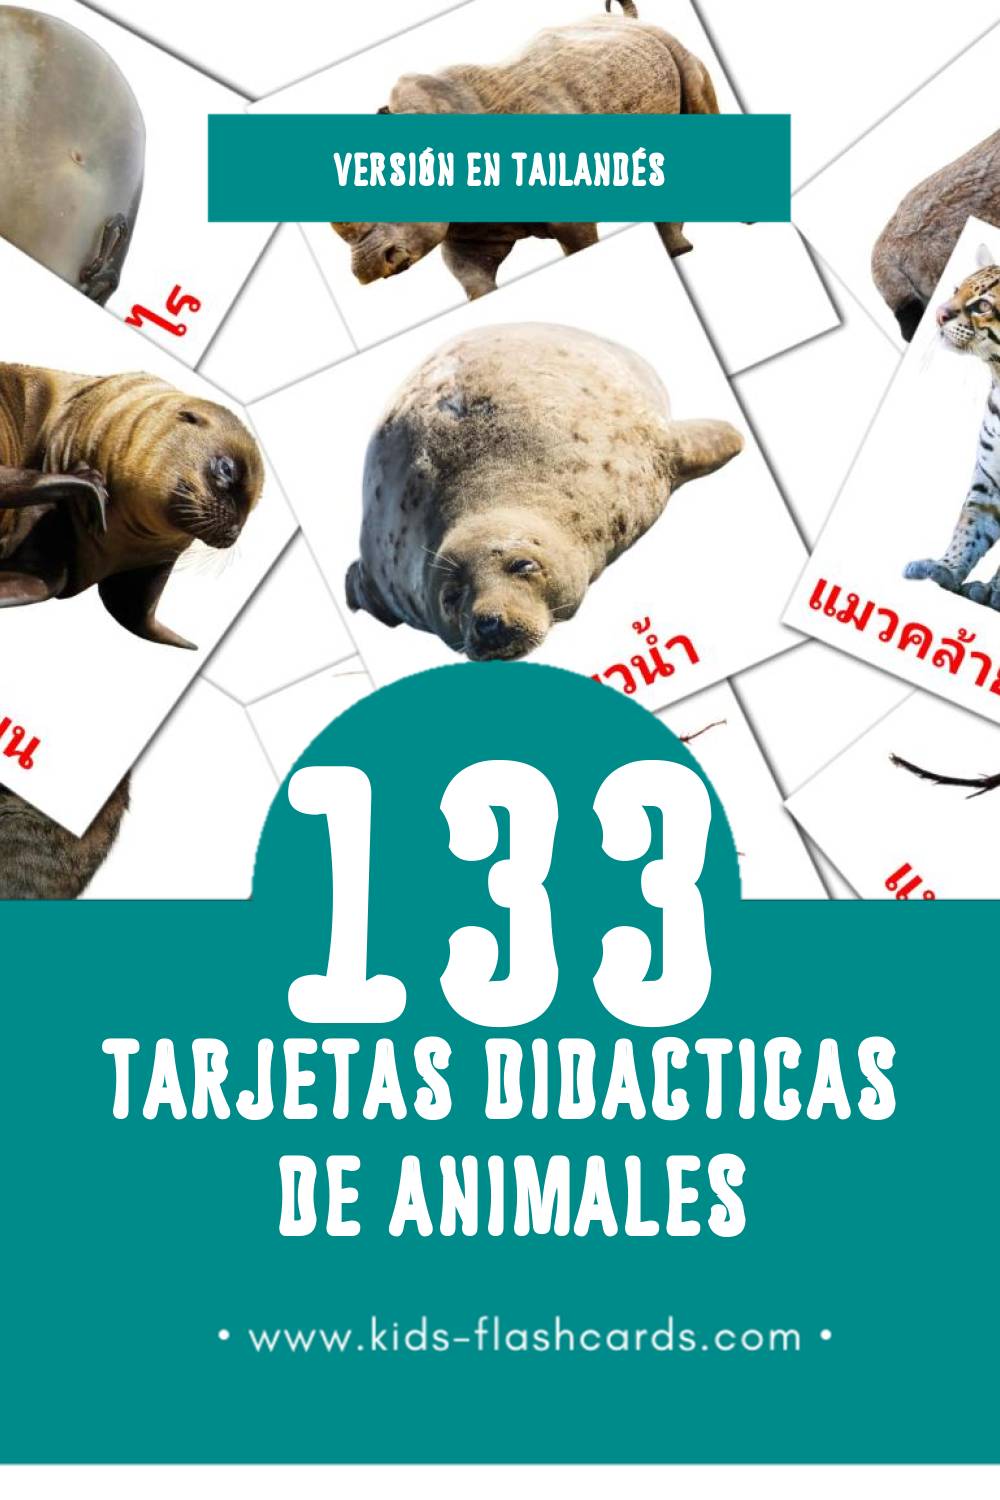 Tarjetas visuales de สัตว์โลก para niños pequeños (133 tarjetas en Tailandés)